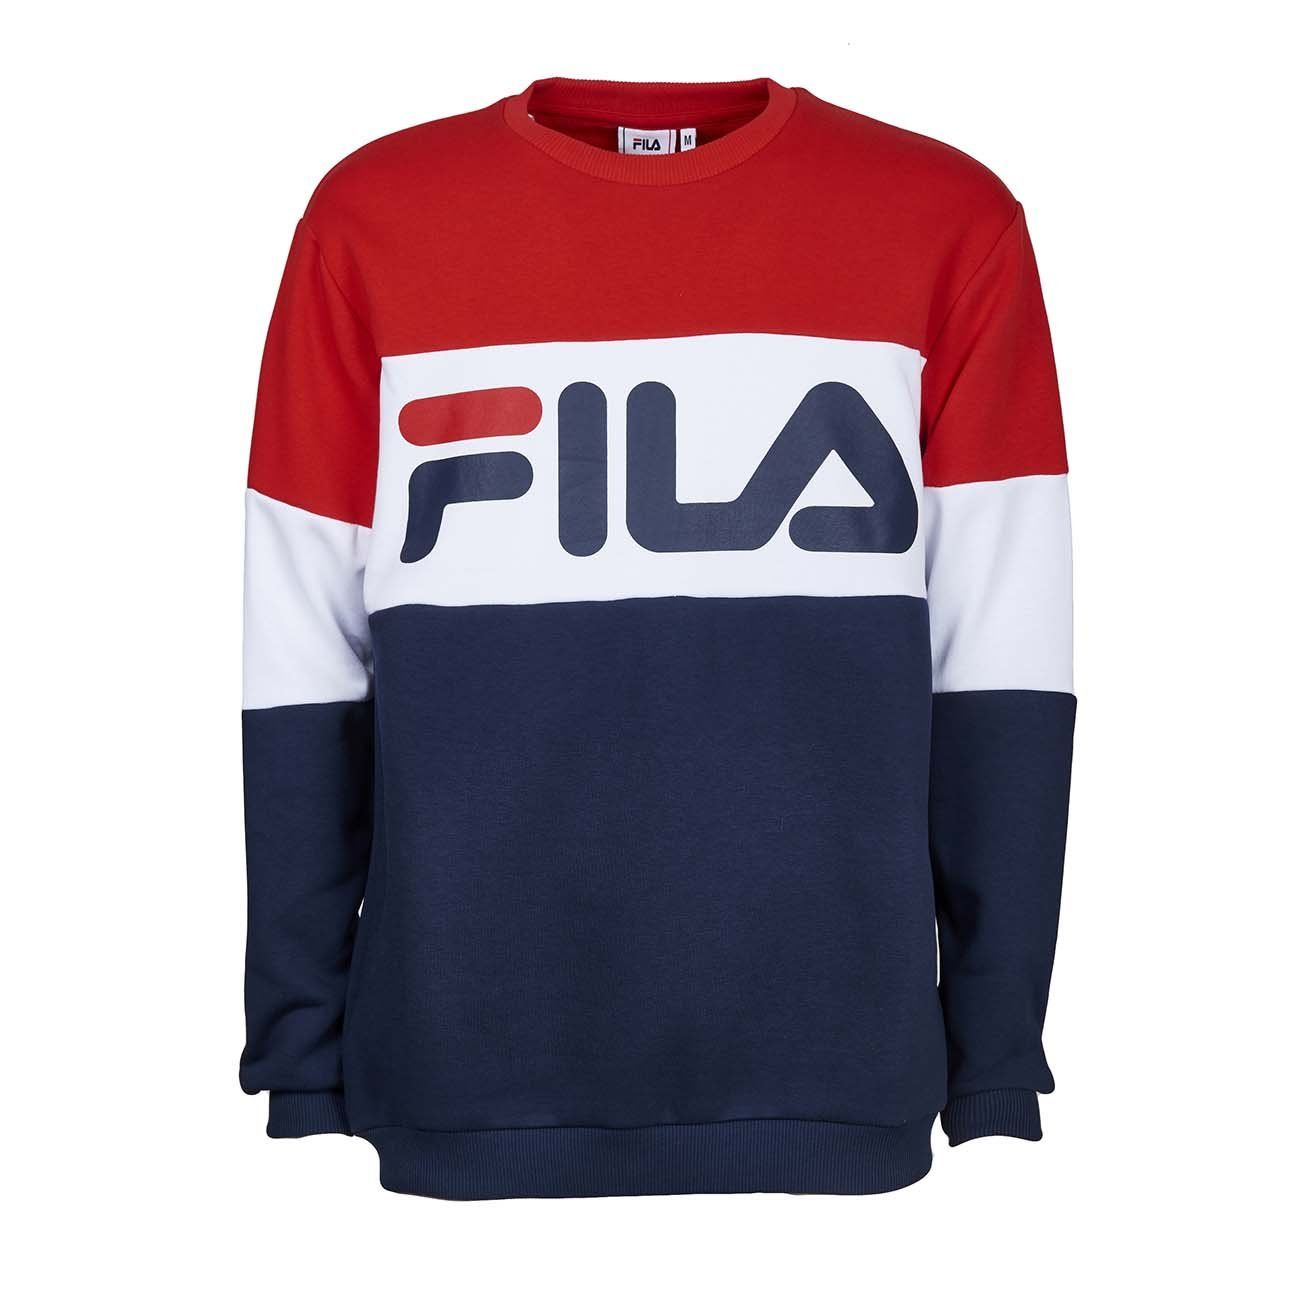 Fila Neck Sweater Kingdom, SAVE 53% -